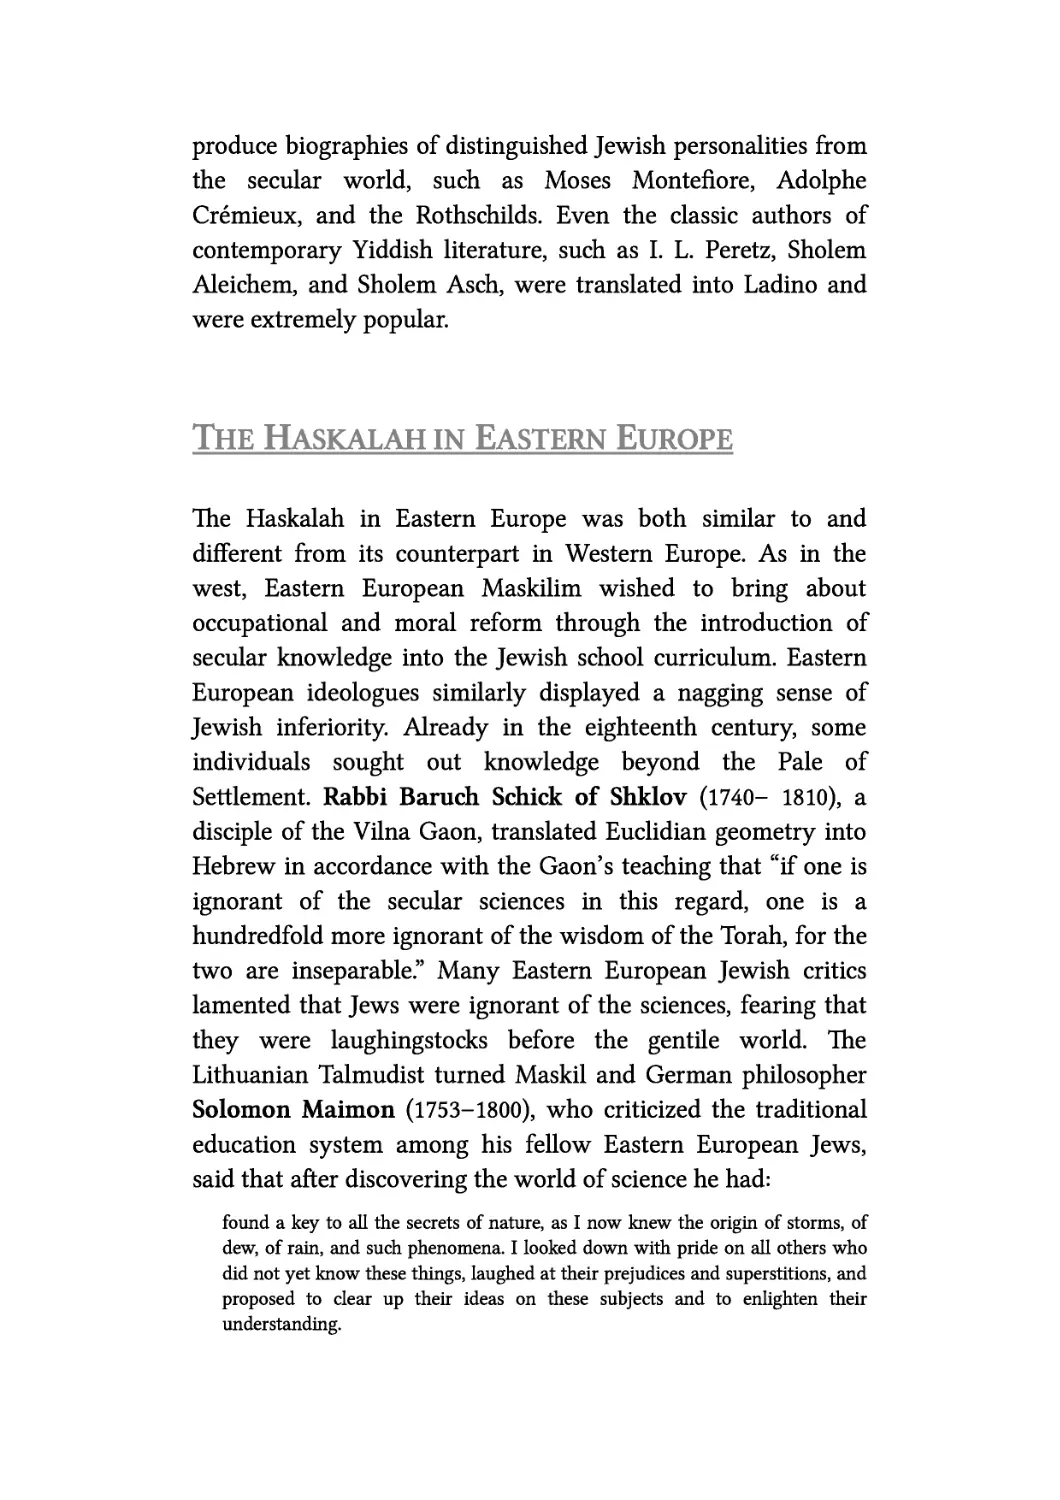 The Haskalah in Eastern Europe